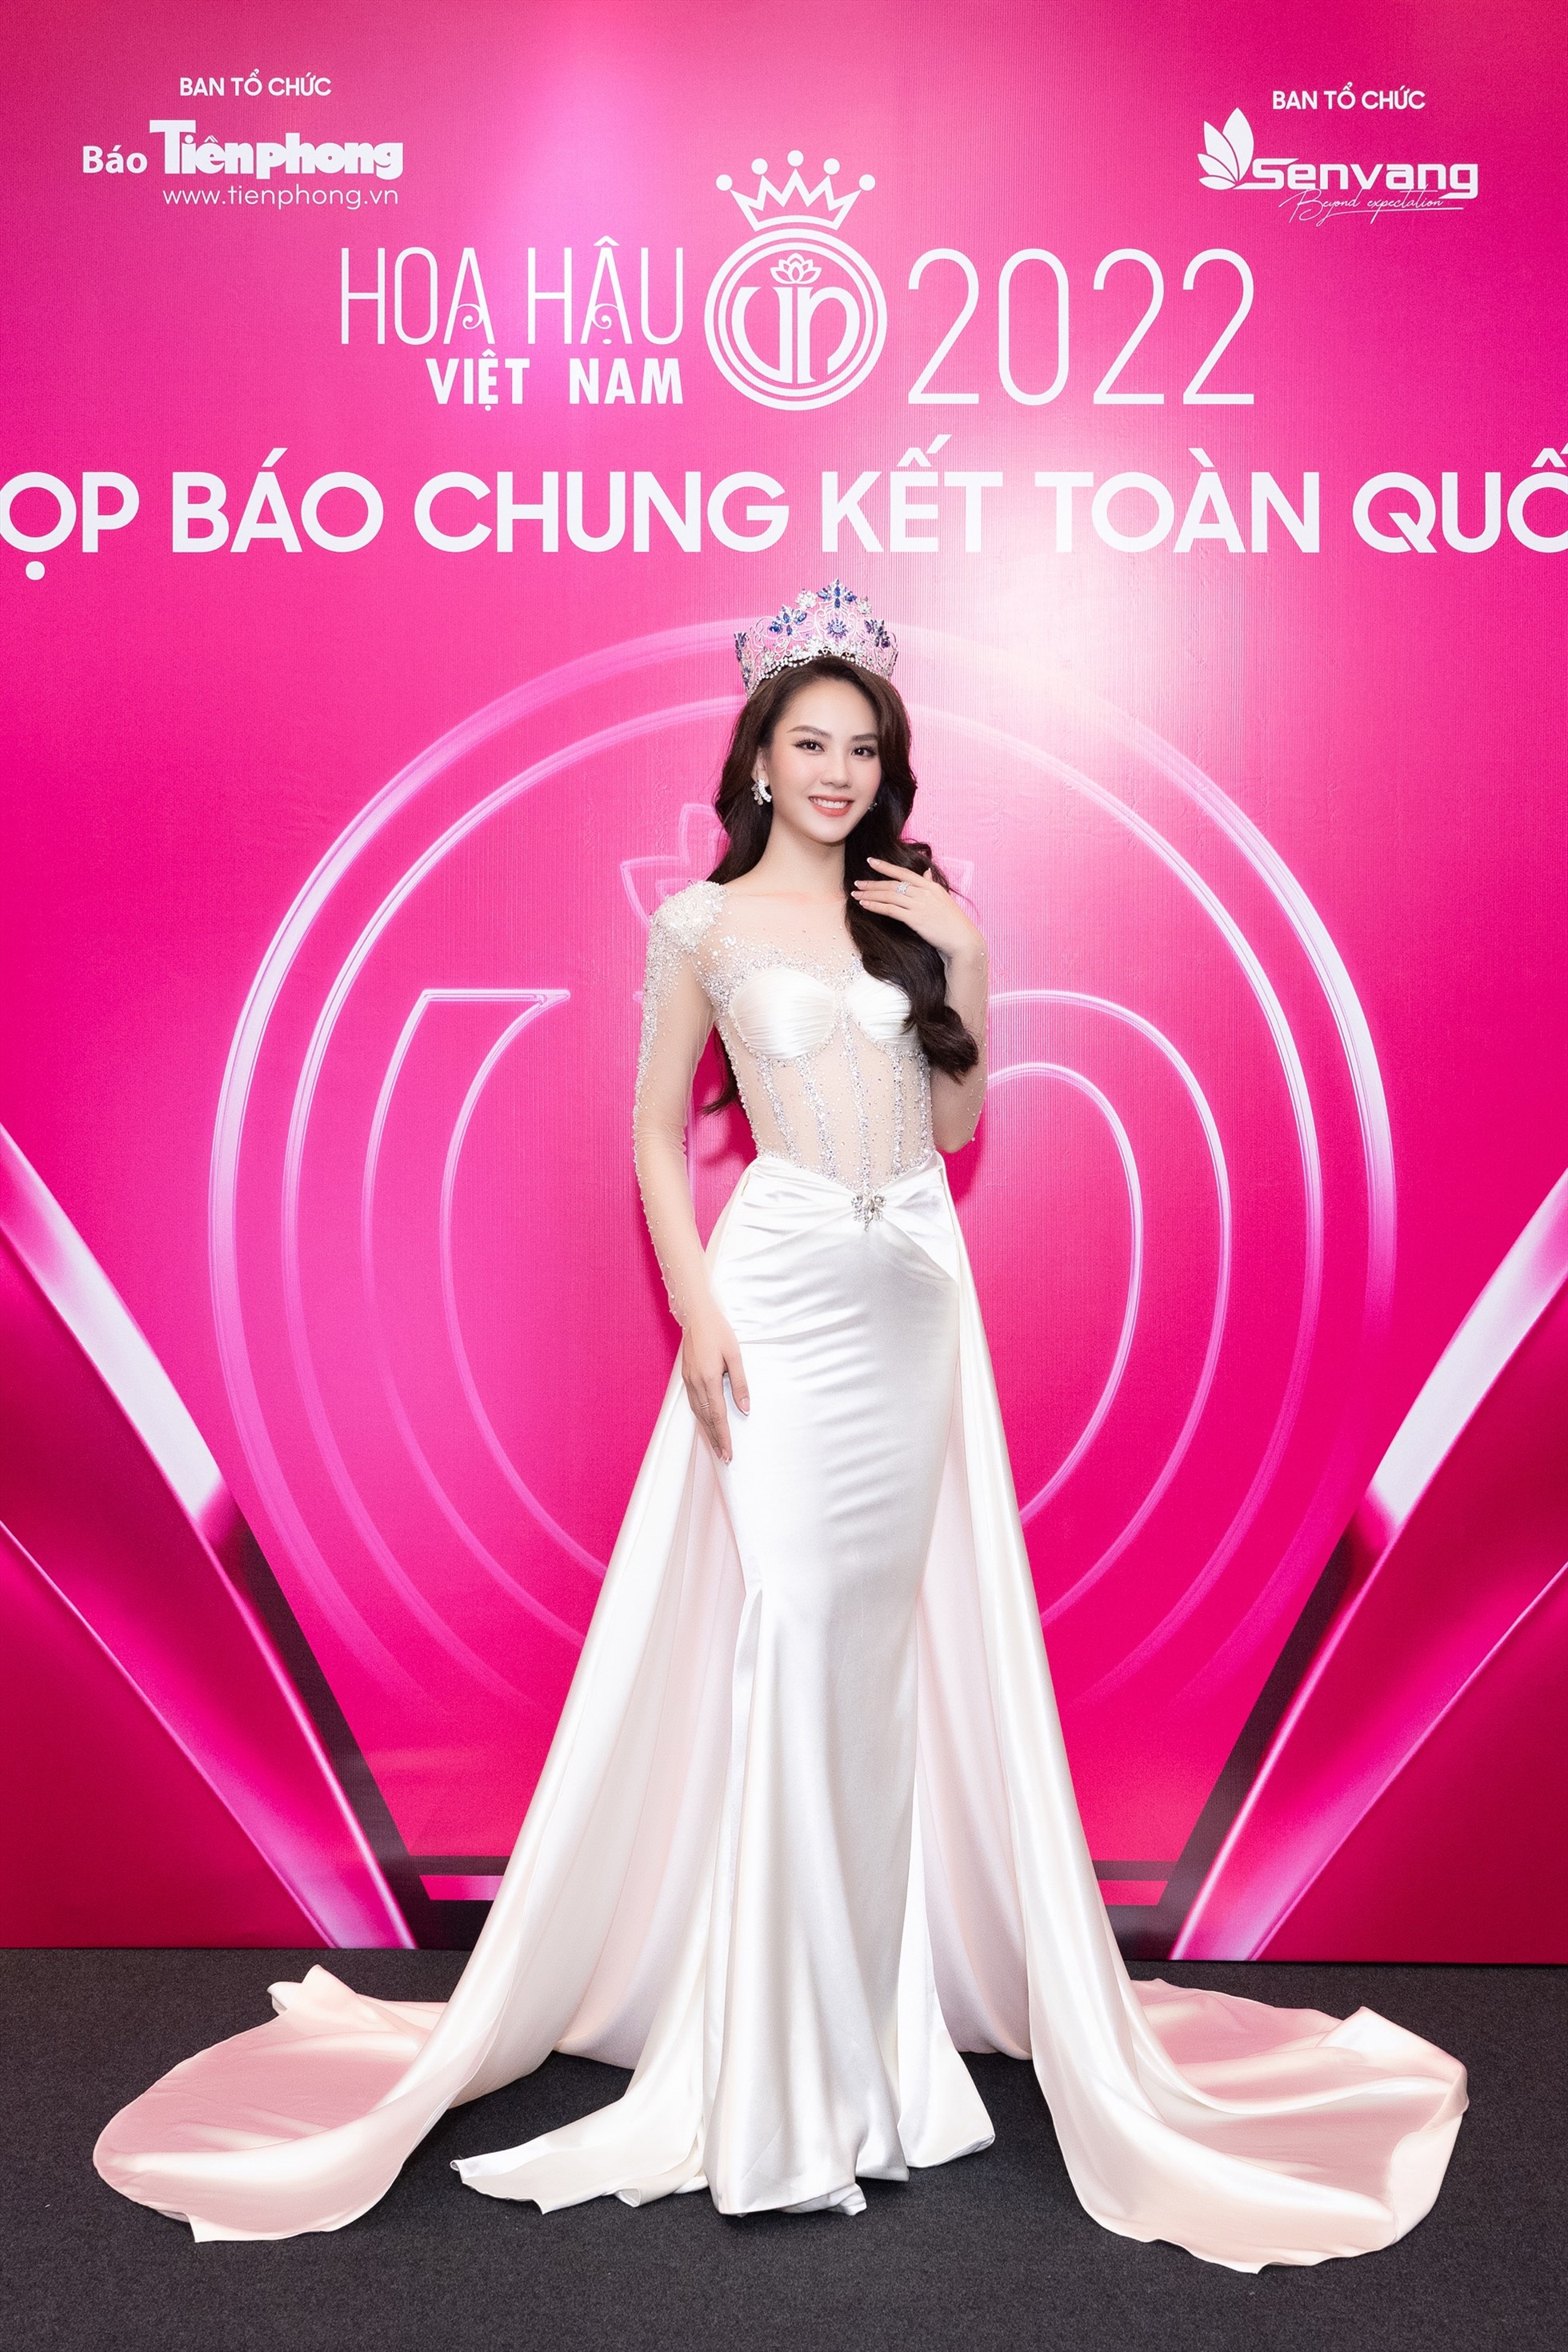 Không thể thiếu tại thảm đỏ lần này là hoa hậu Bảo Ngọc. Cô cũng đảm nhận vai trò là thành viên ban giám khảo hoa hậu Việt Nam 2022 và nhận được rất nhiều lời khen ngợi cho mỗi lần xuất hiện tại thảm đỏ.